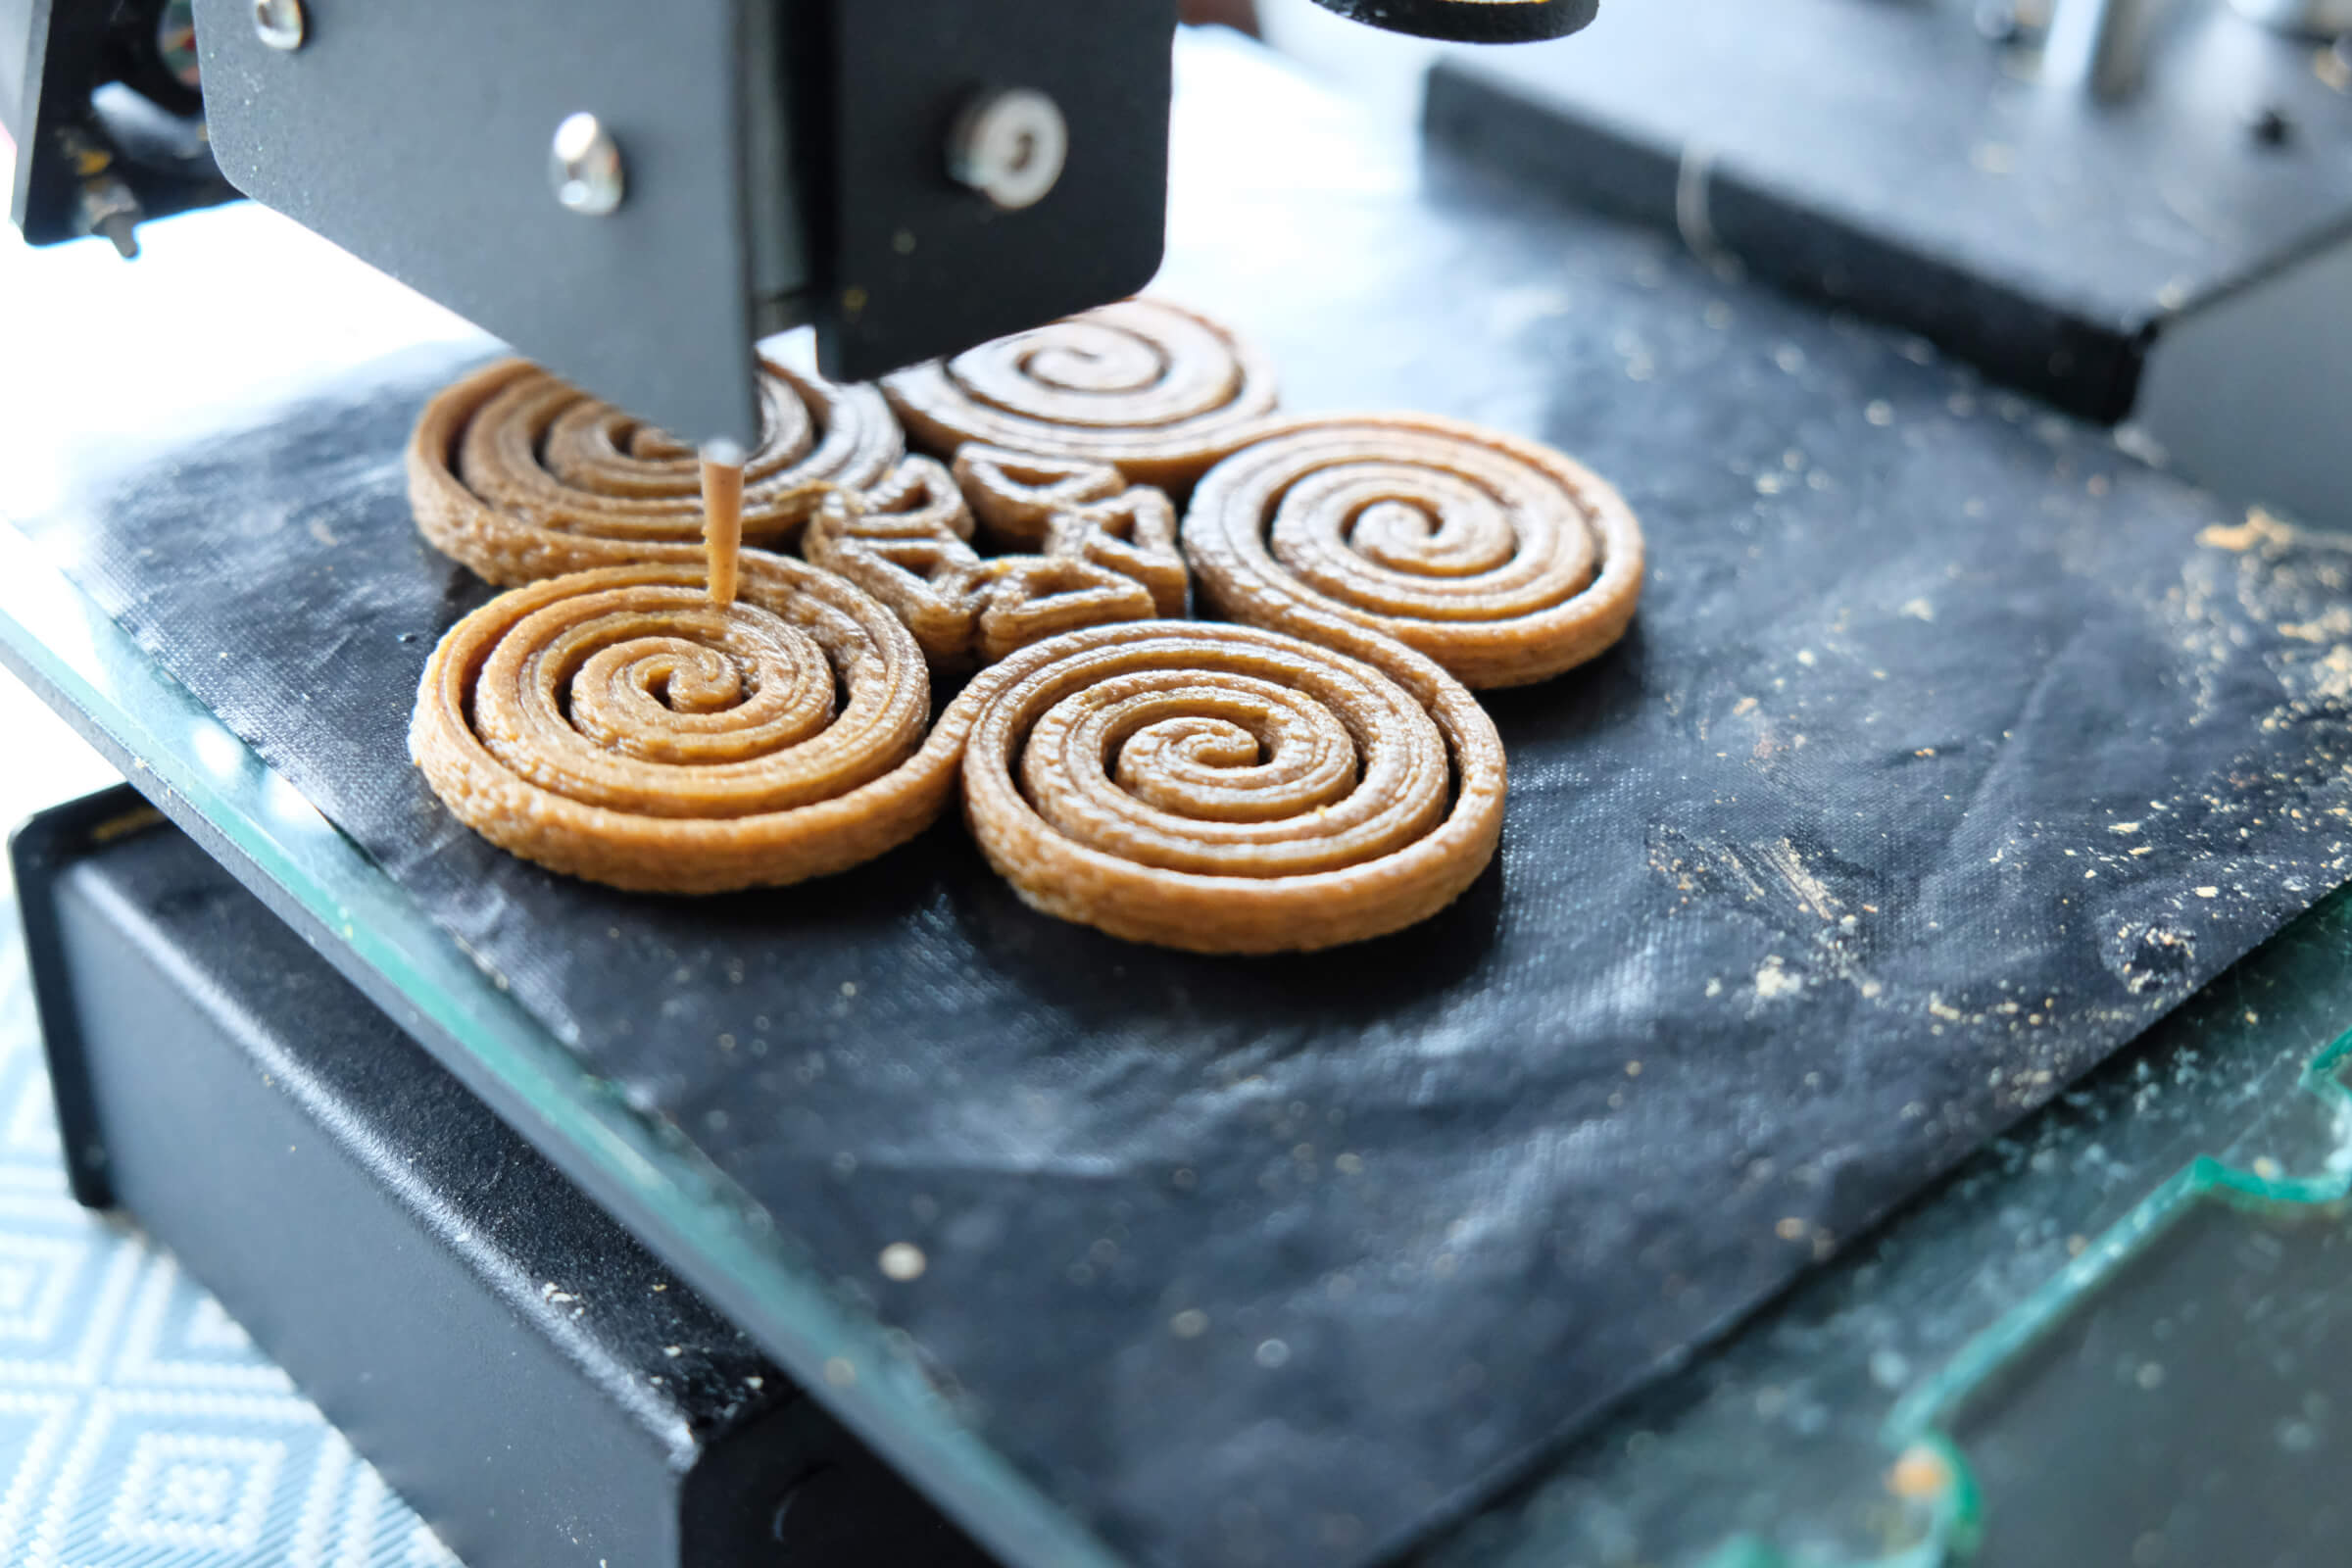 Voor het 3D printen van eetbare designs werkt Upprinting Food met een zetmeelrijke pasta volgens eigen recept